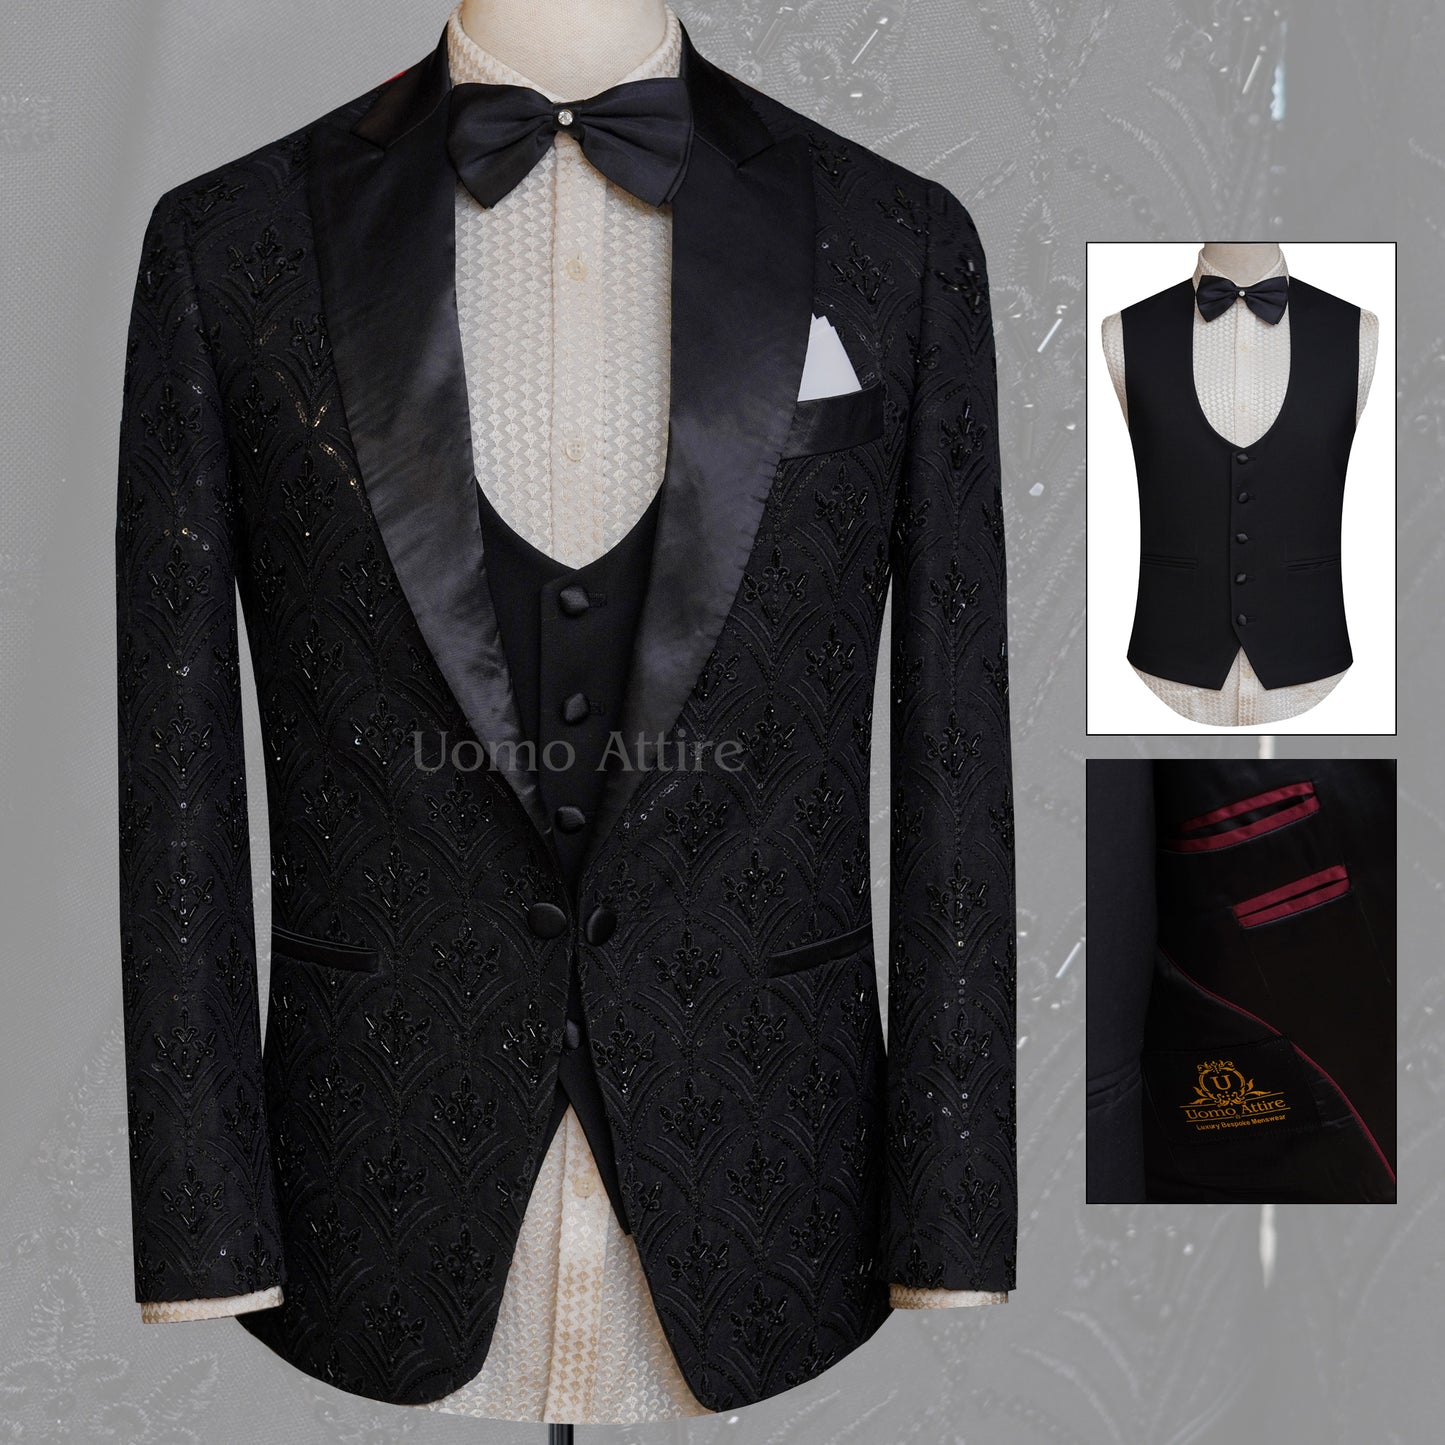 Custom made fully embellished tuxedo 3 piece suit, black tuxedo suit, tuxedo suit